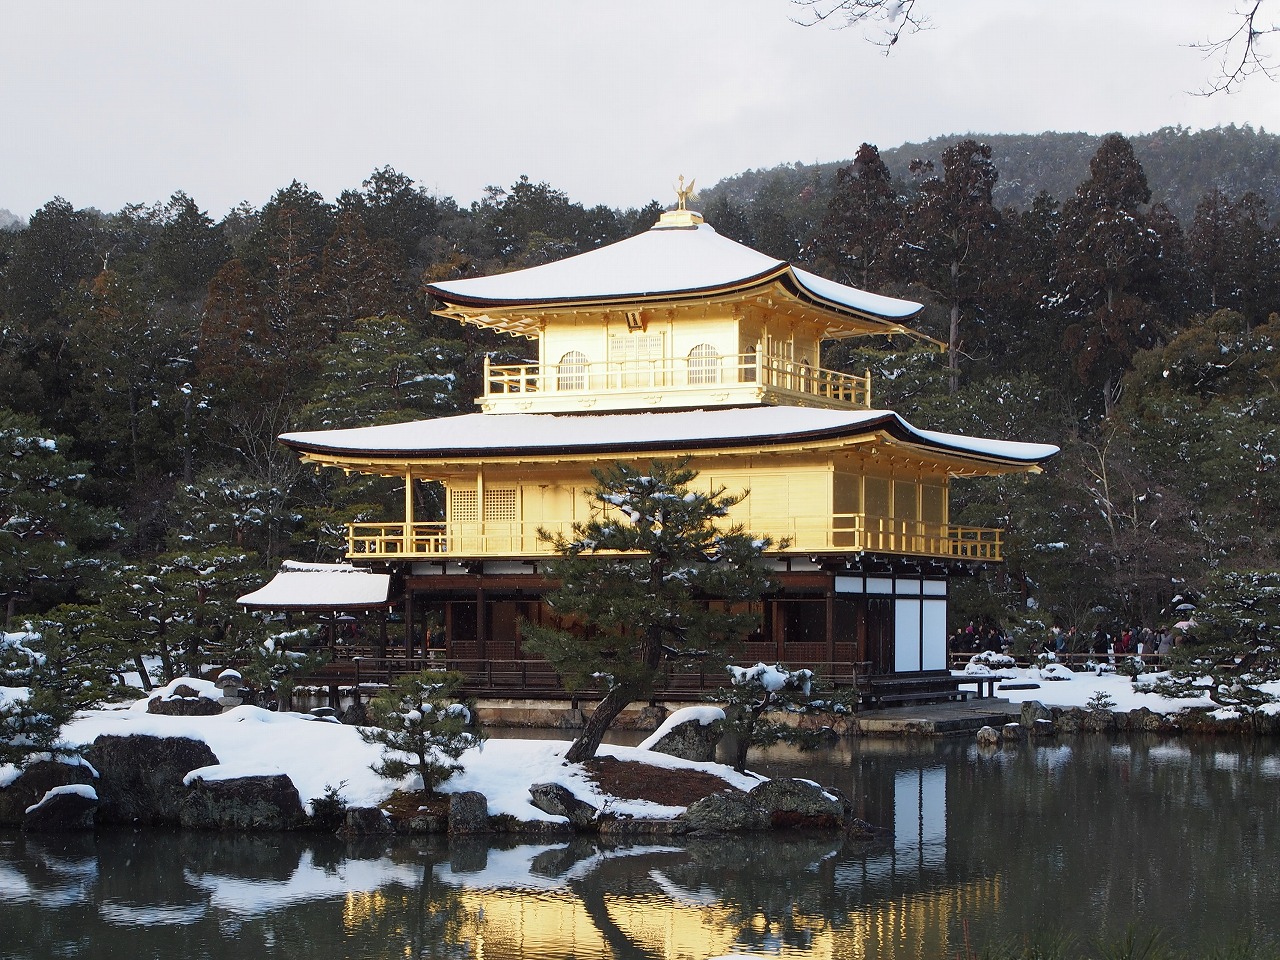 京都 金閣寺 Kyoto Kinkaku-ji Temple ( 2020年 京都の冬 雪景色の庭園が美しいおすすめの写真撮影スポット・アクセス情報や交通手段など!) | 写真と映像で紹介する ...